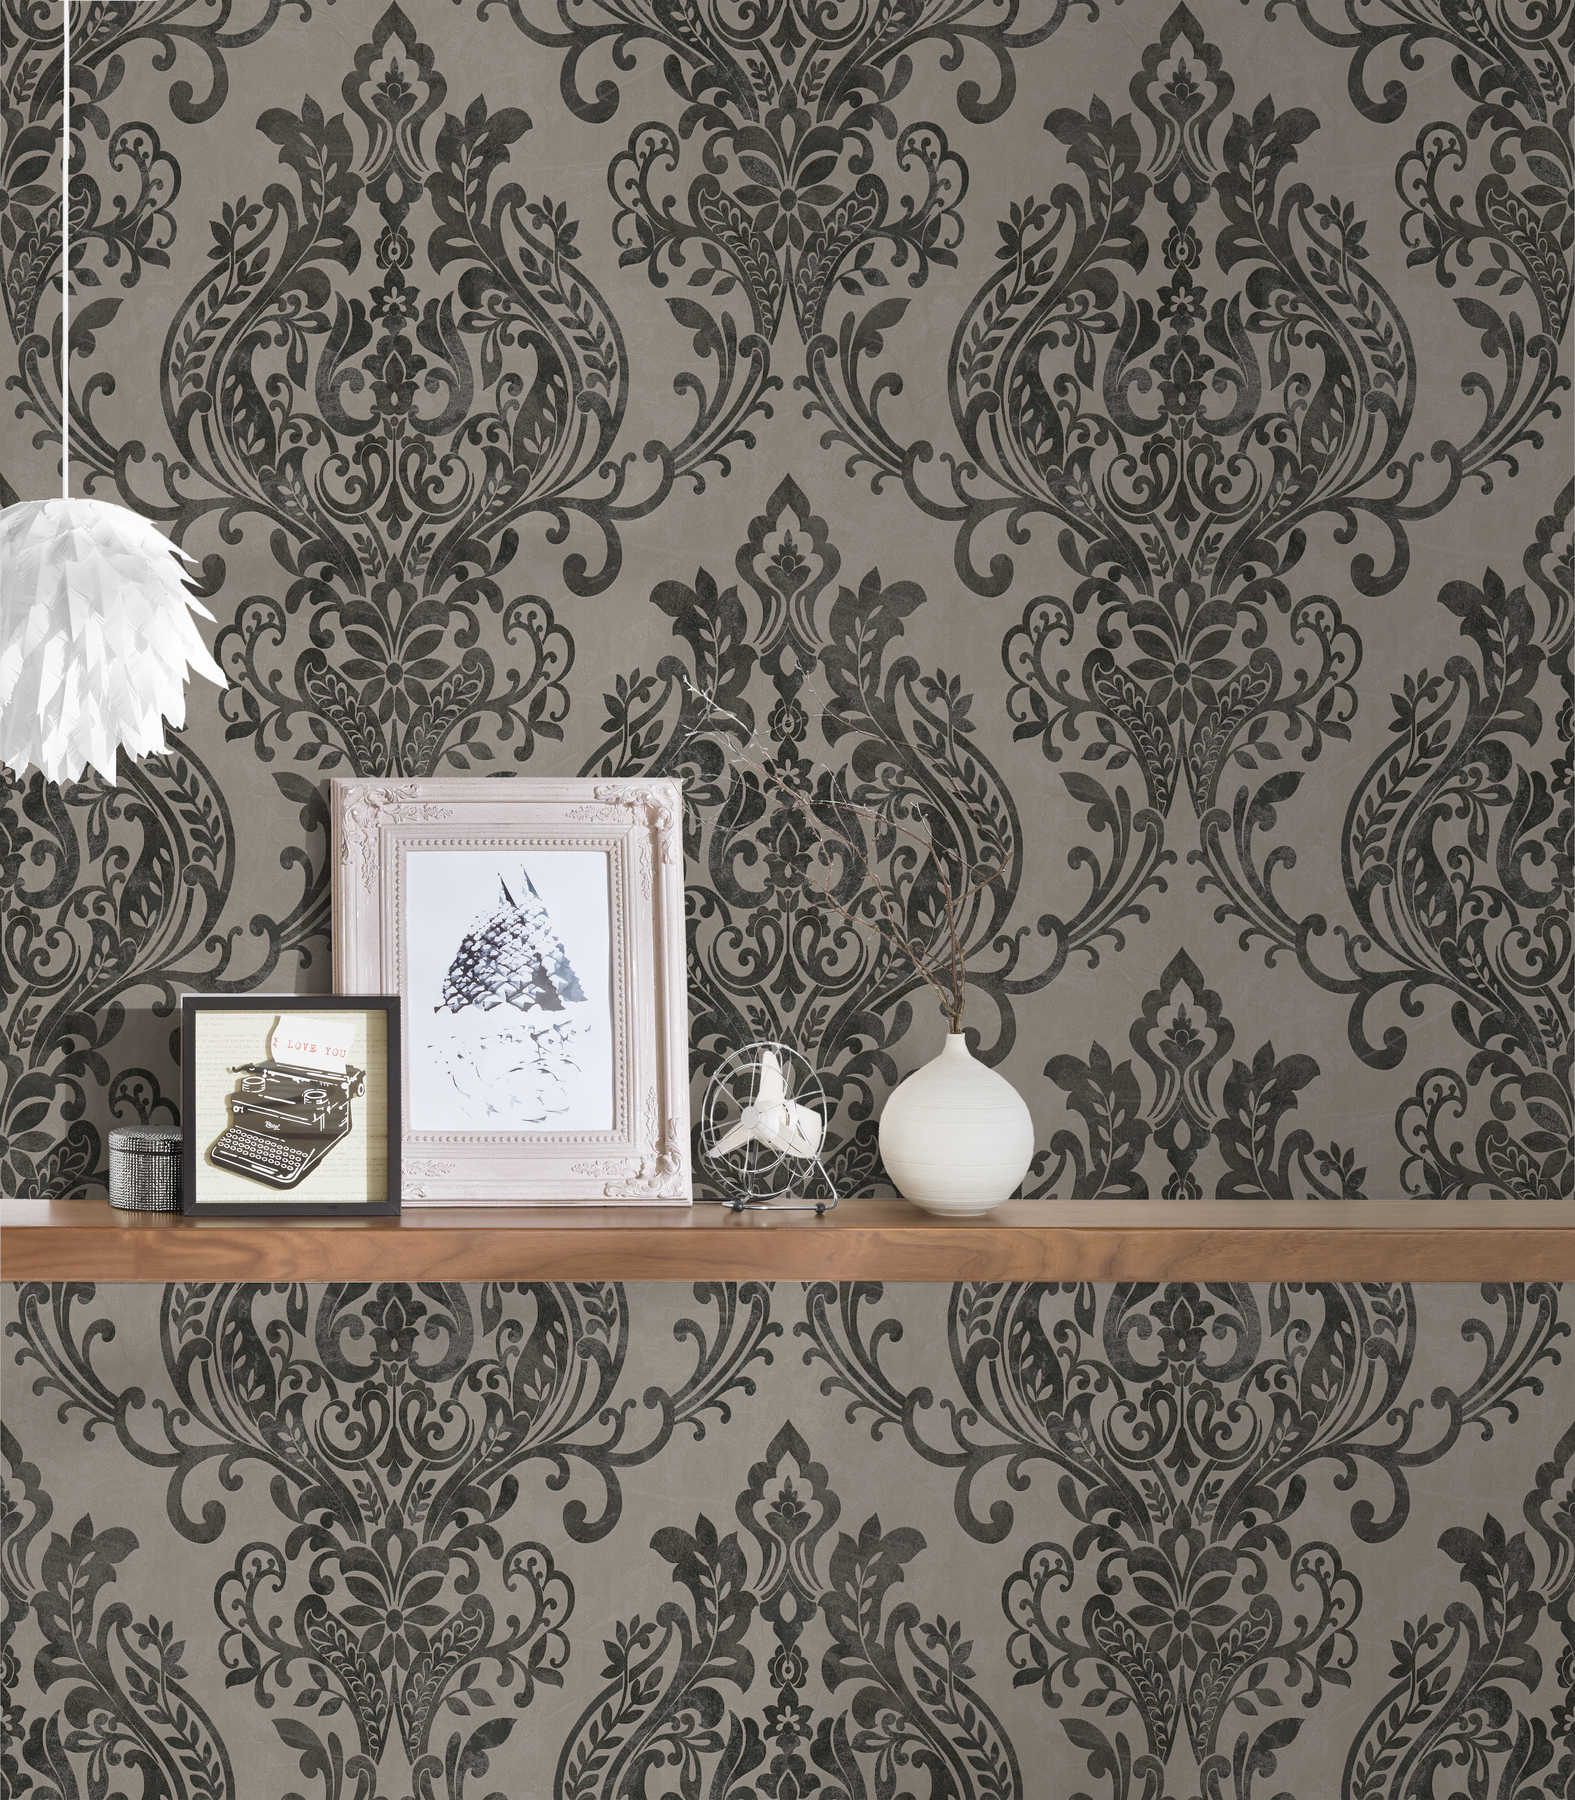             Ornament wallpaper vintage, floral - grey, black
        